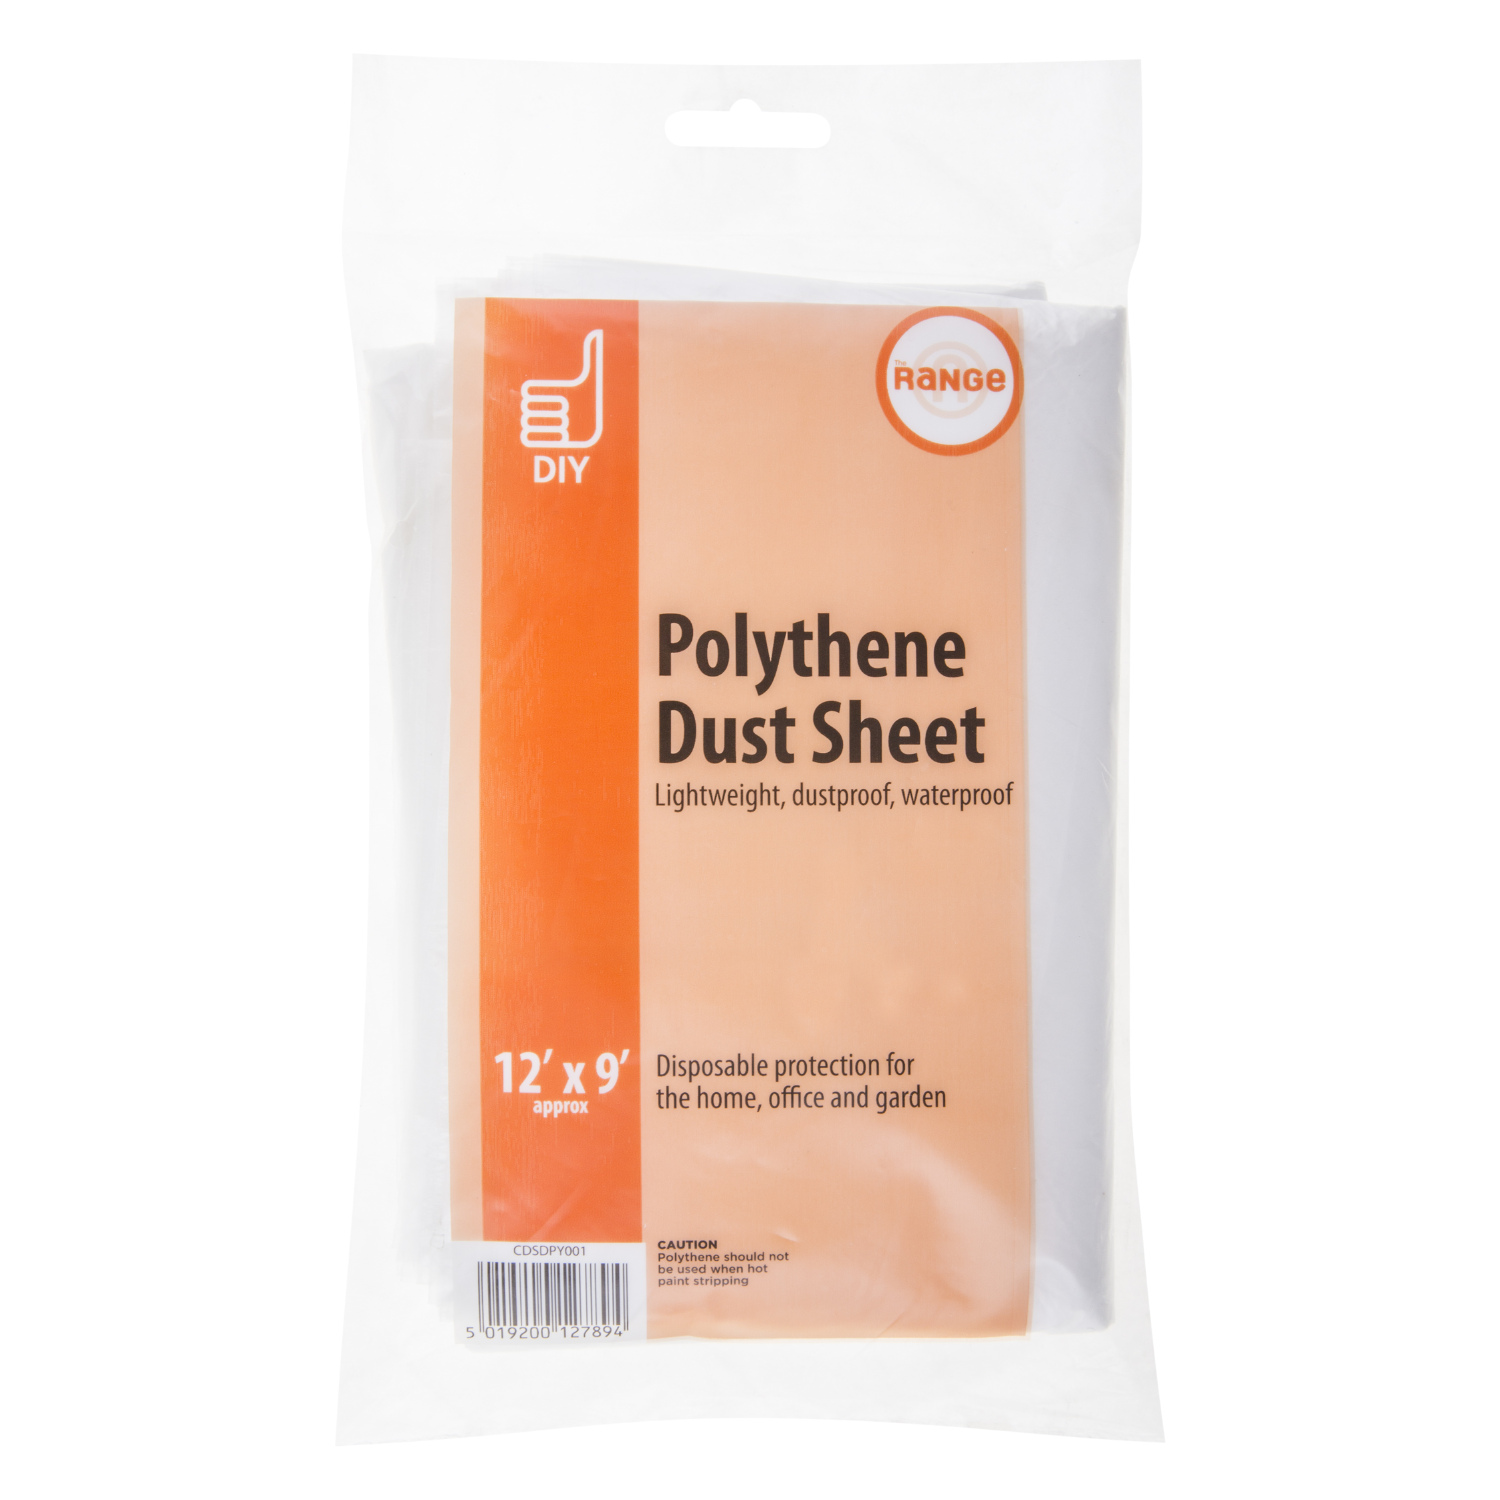 Prepare It Polythene Dust Sheet Image 1